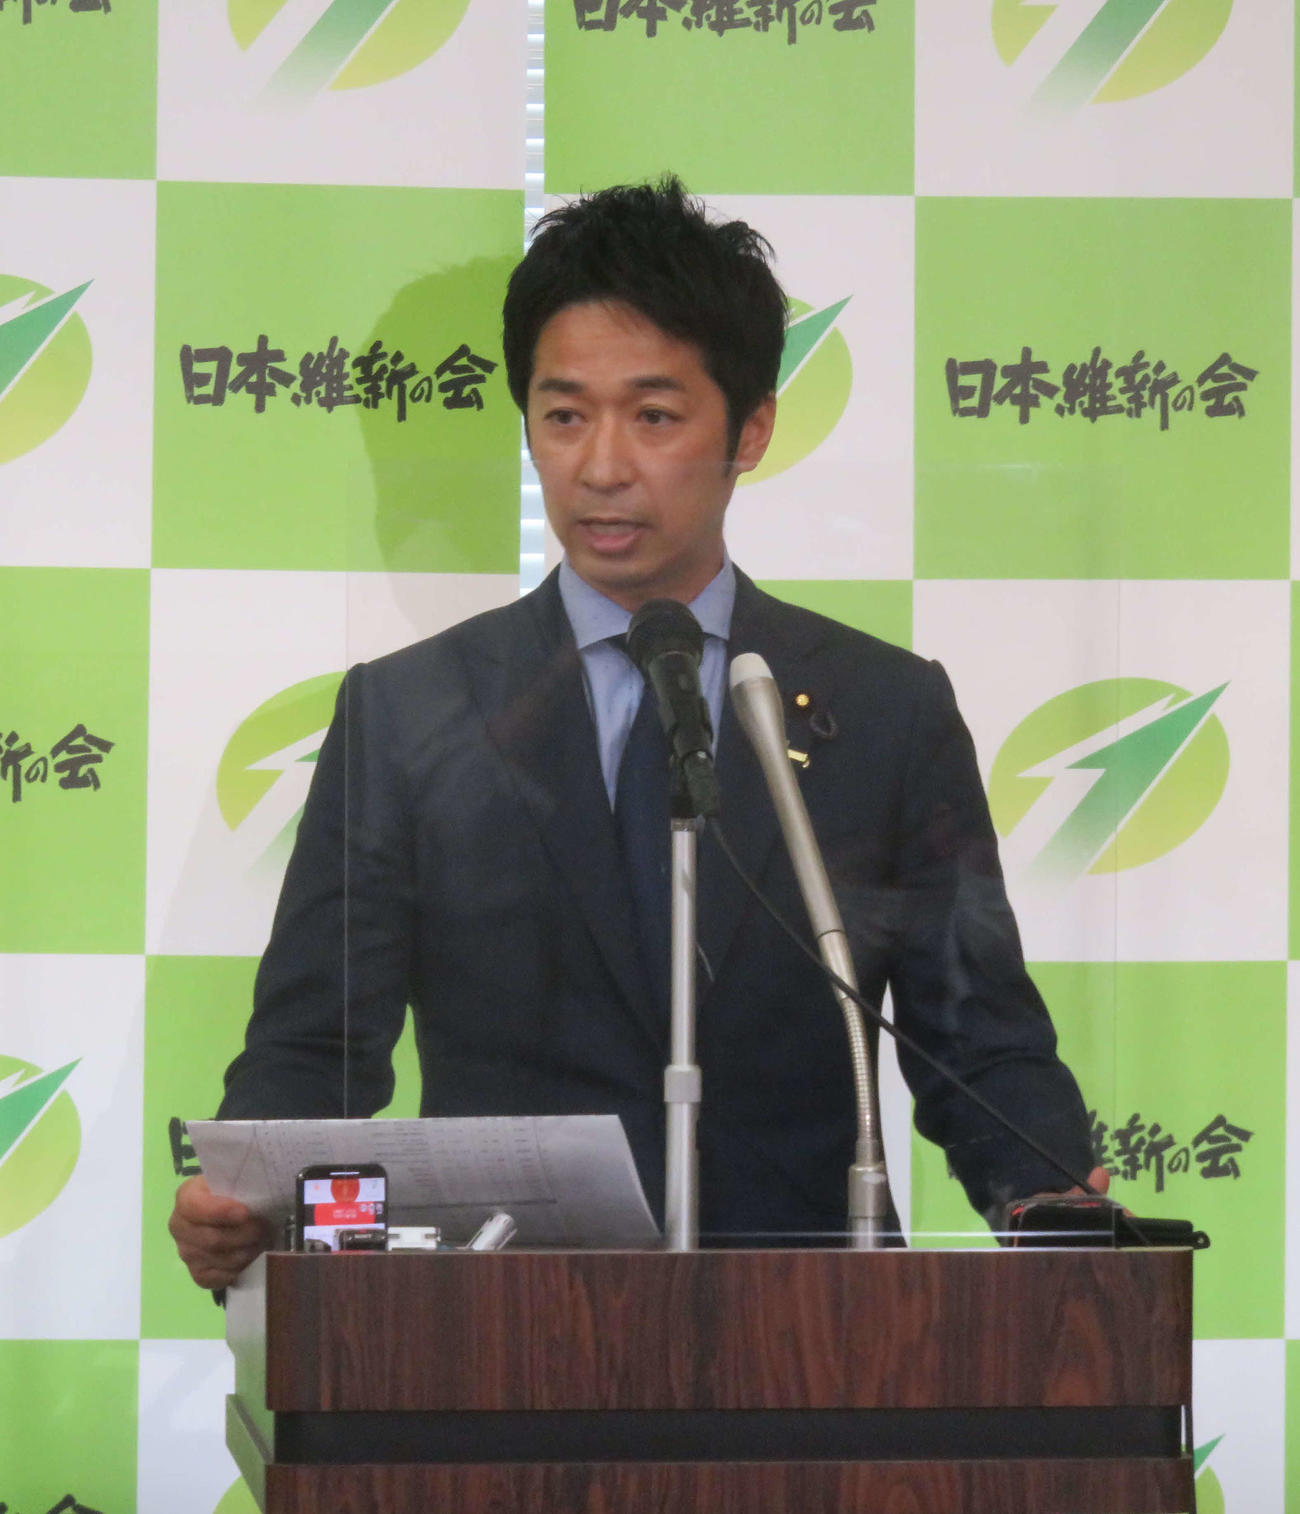 日本維新の会の藤田文武幹事長はJR無料パスの不正利用問題について対策を提言するとした（撮影・大上悟）